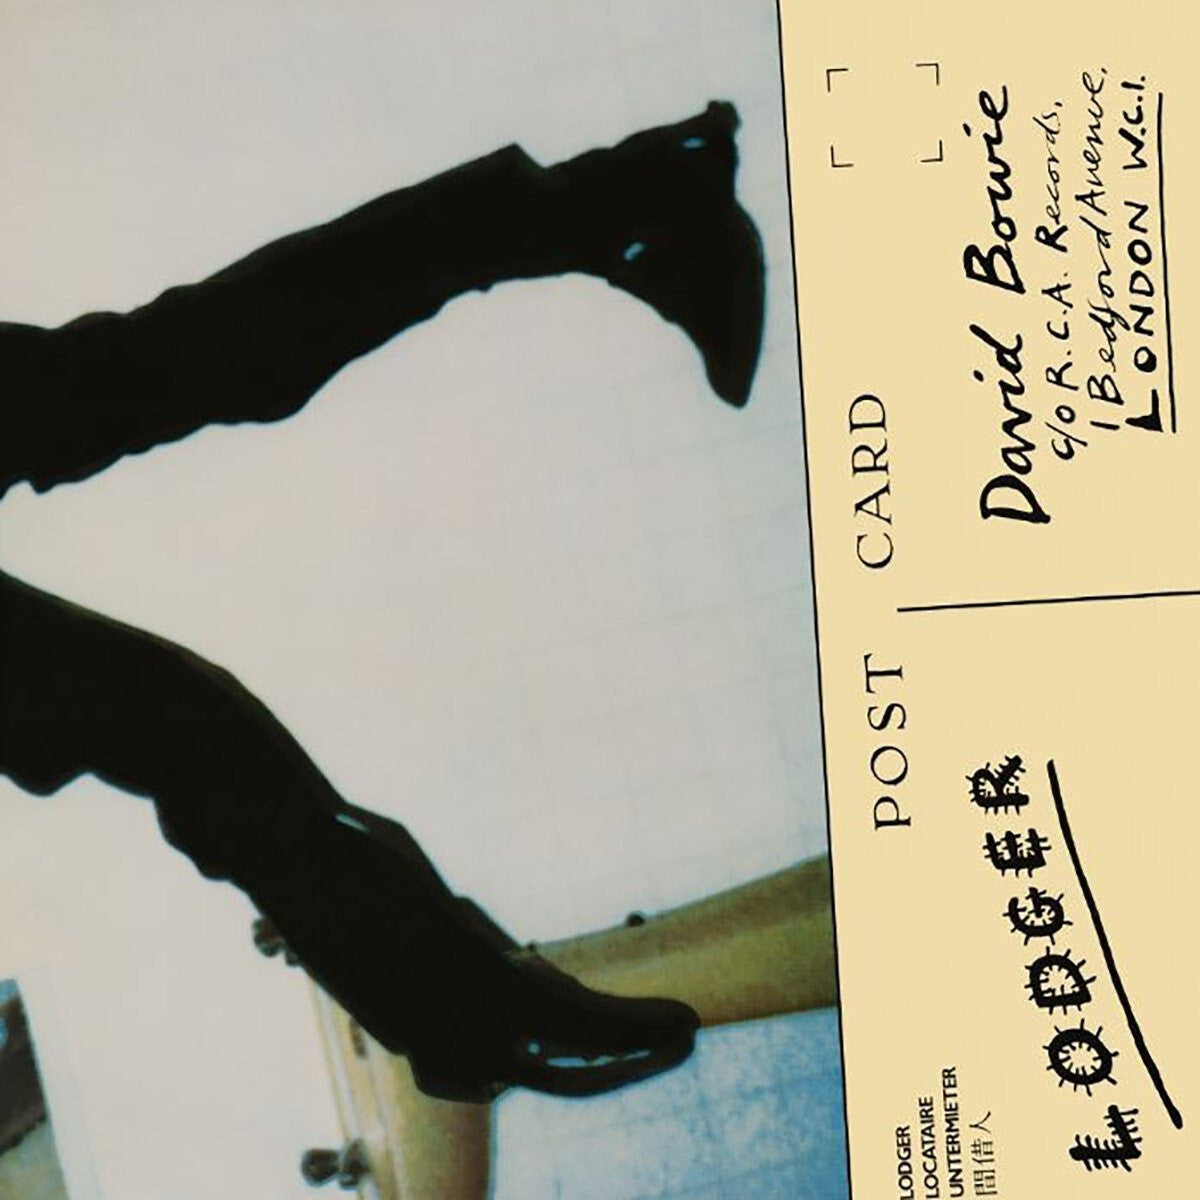 David Bowie - Lodger: Vinyl LP.